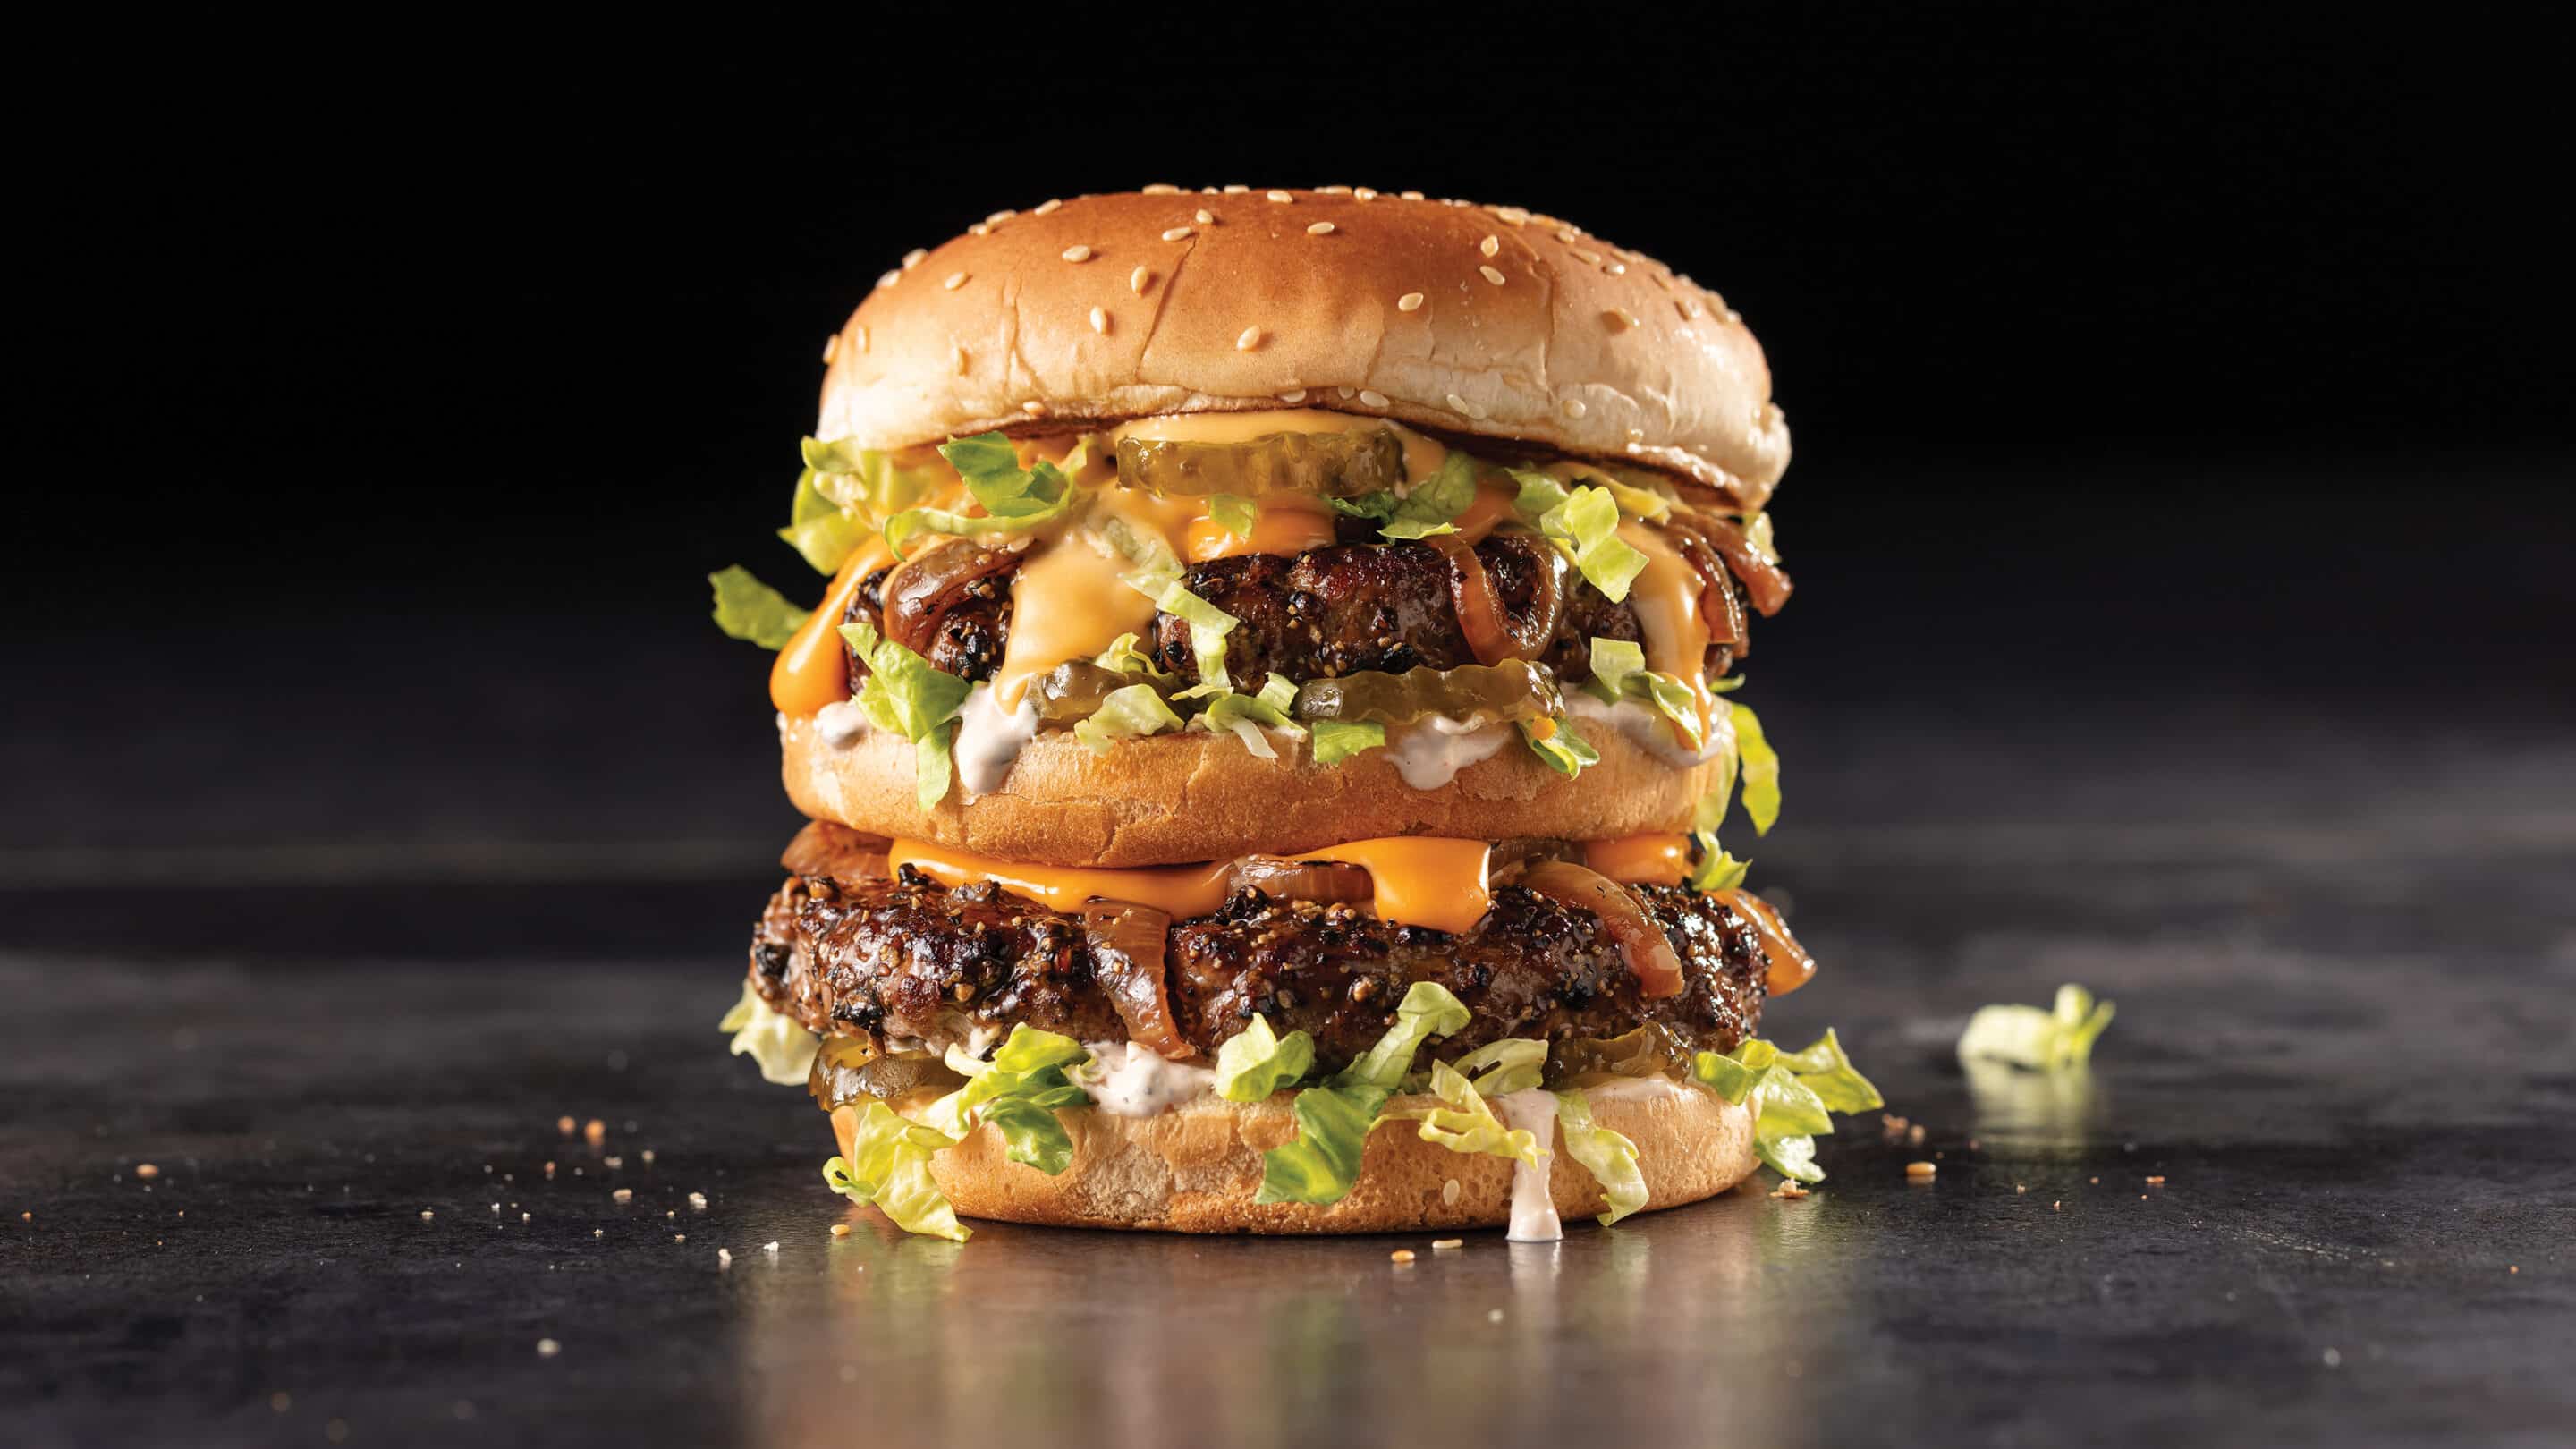 Classic Big Boy Double-Decker Hamburger Copycat Recipe